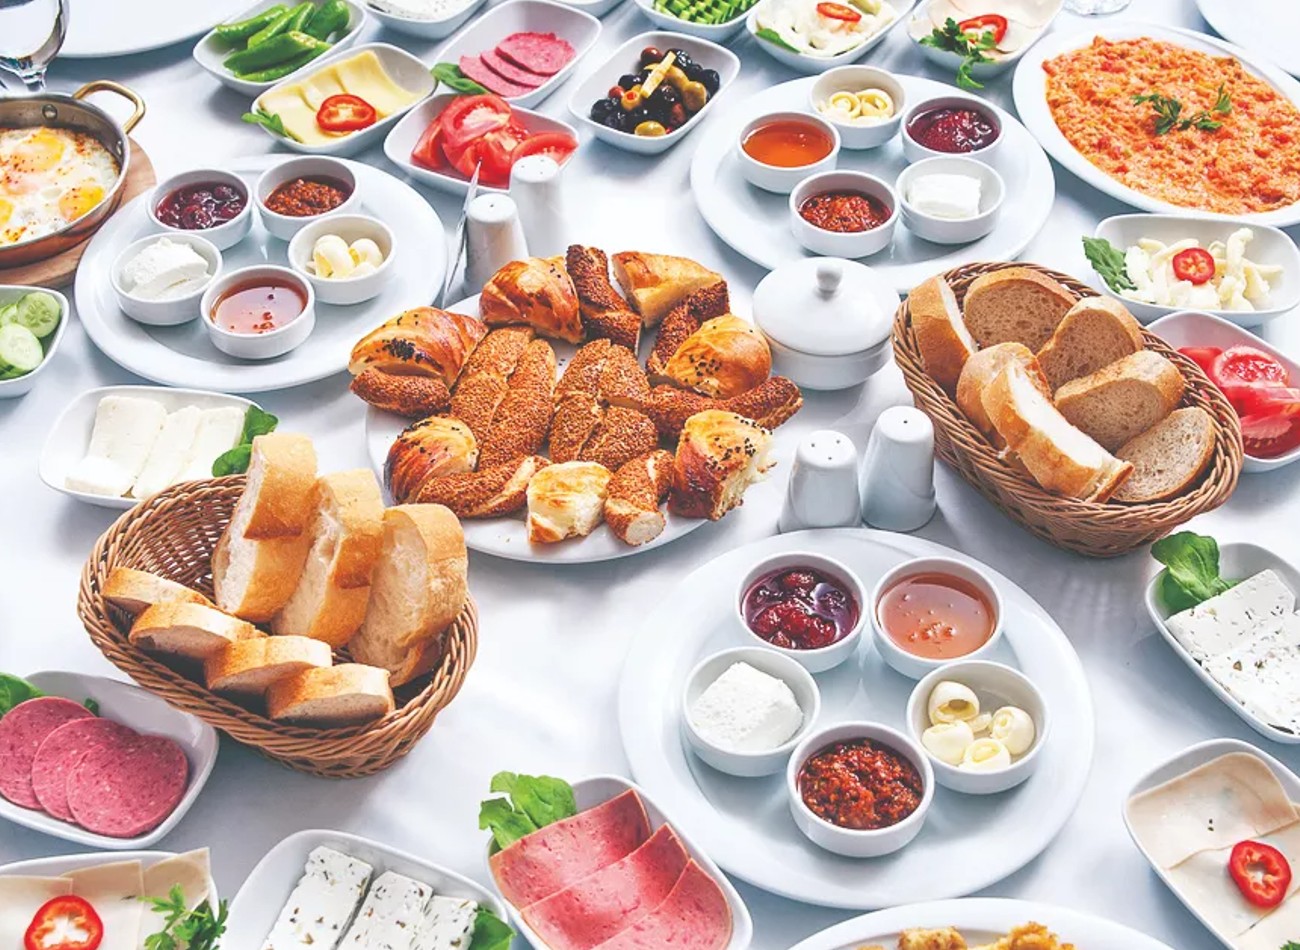 Bursa’da Kahvaltı Nerede Yenir? Bursa Kahvaltı Mekânları